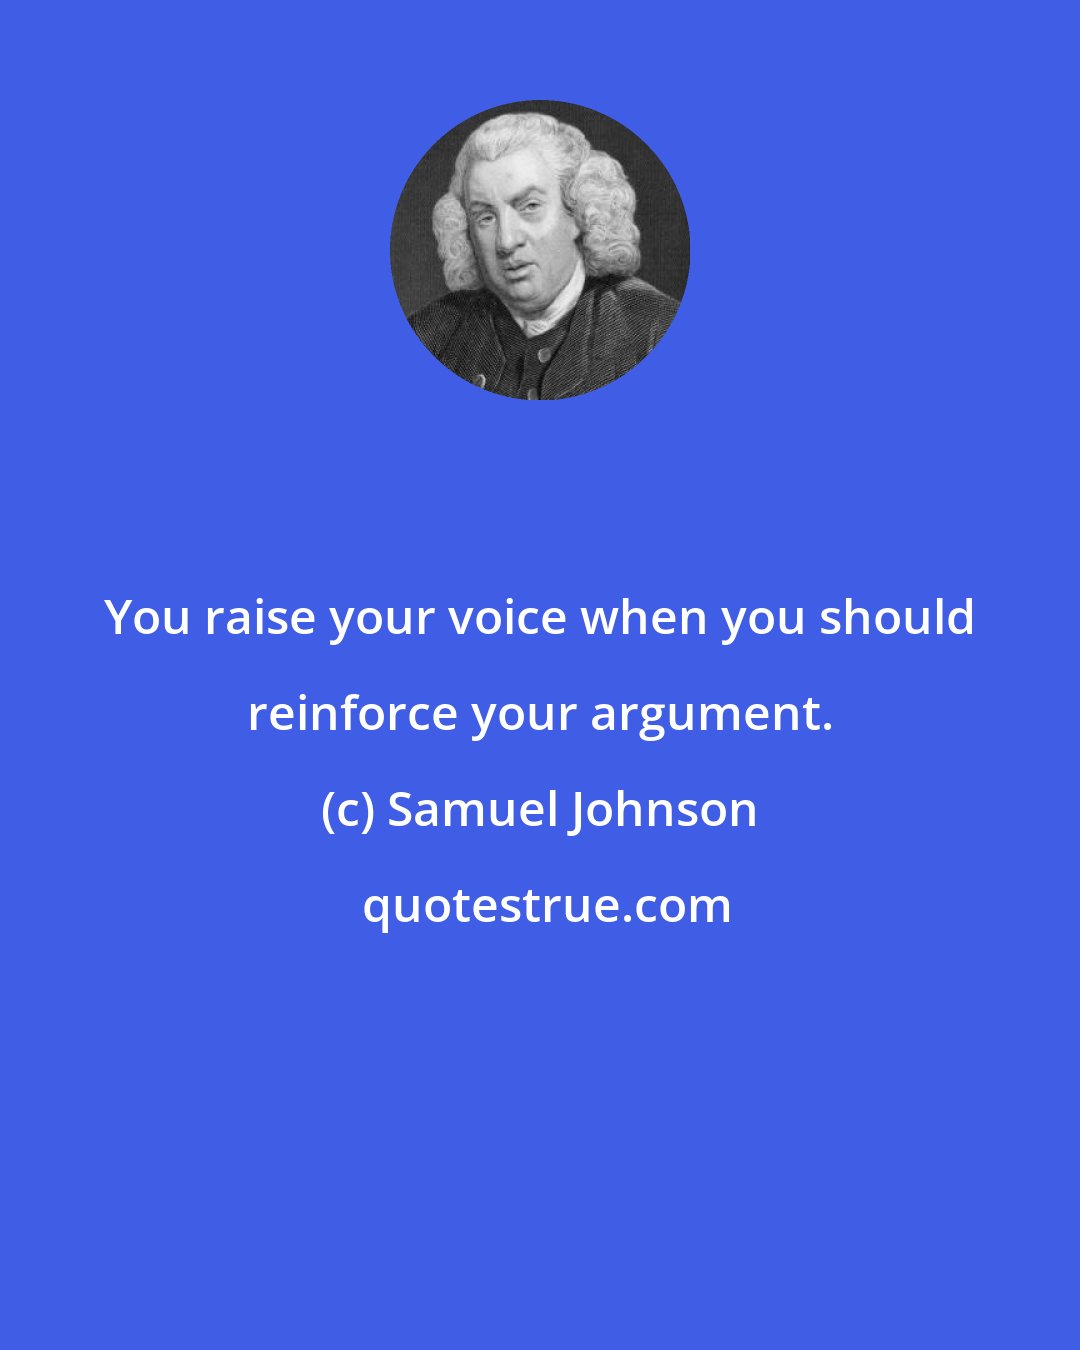 Samuel Johnson: You raise your voice when you should reinforce your argument.